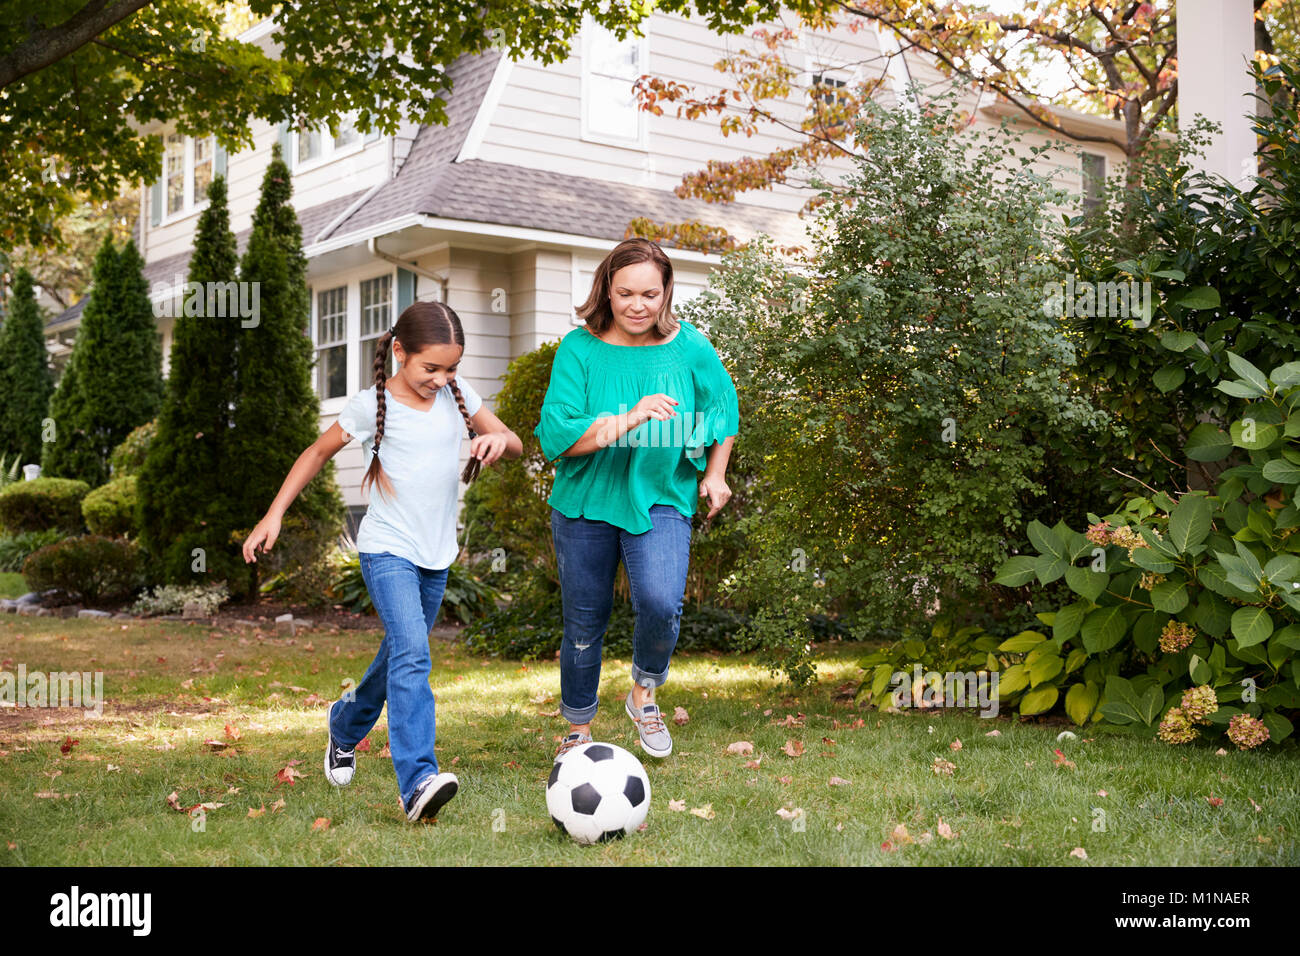 Grand-mère joue au soccer dans jardin avec petite-fille Banque D'Images